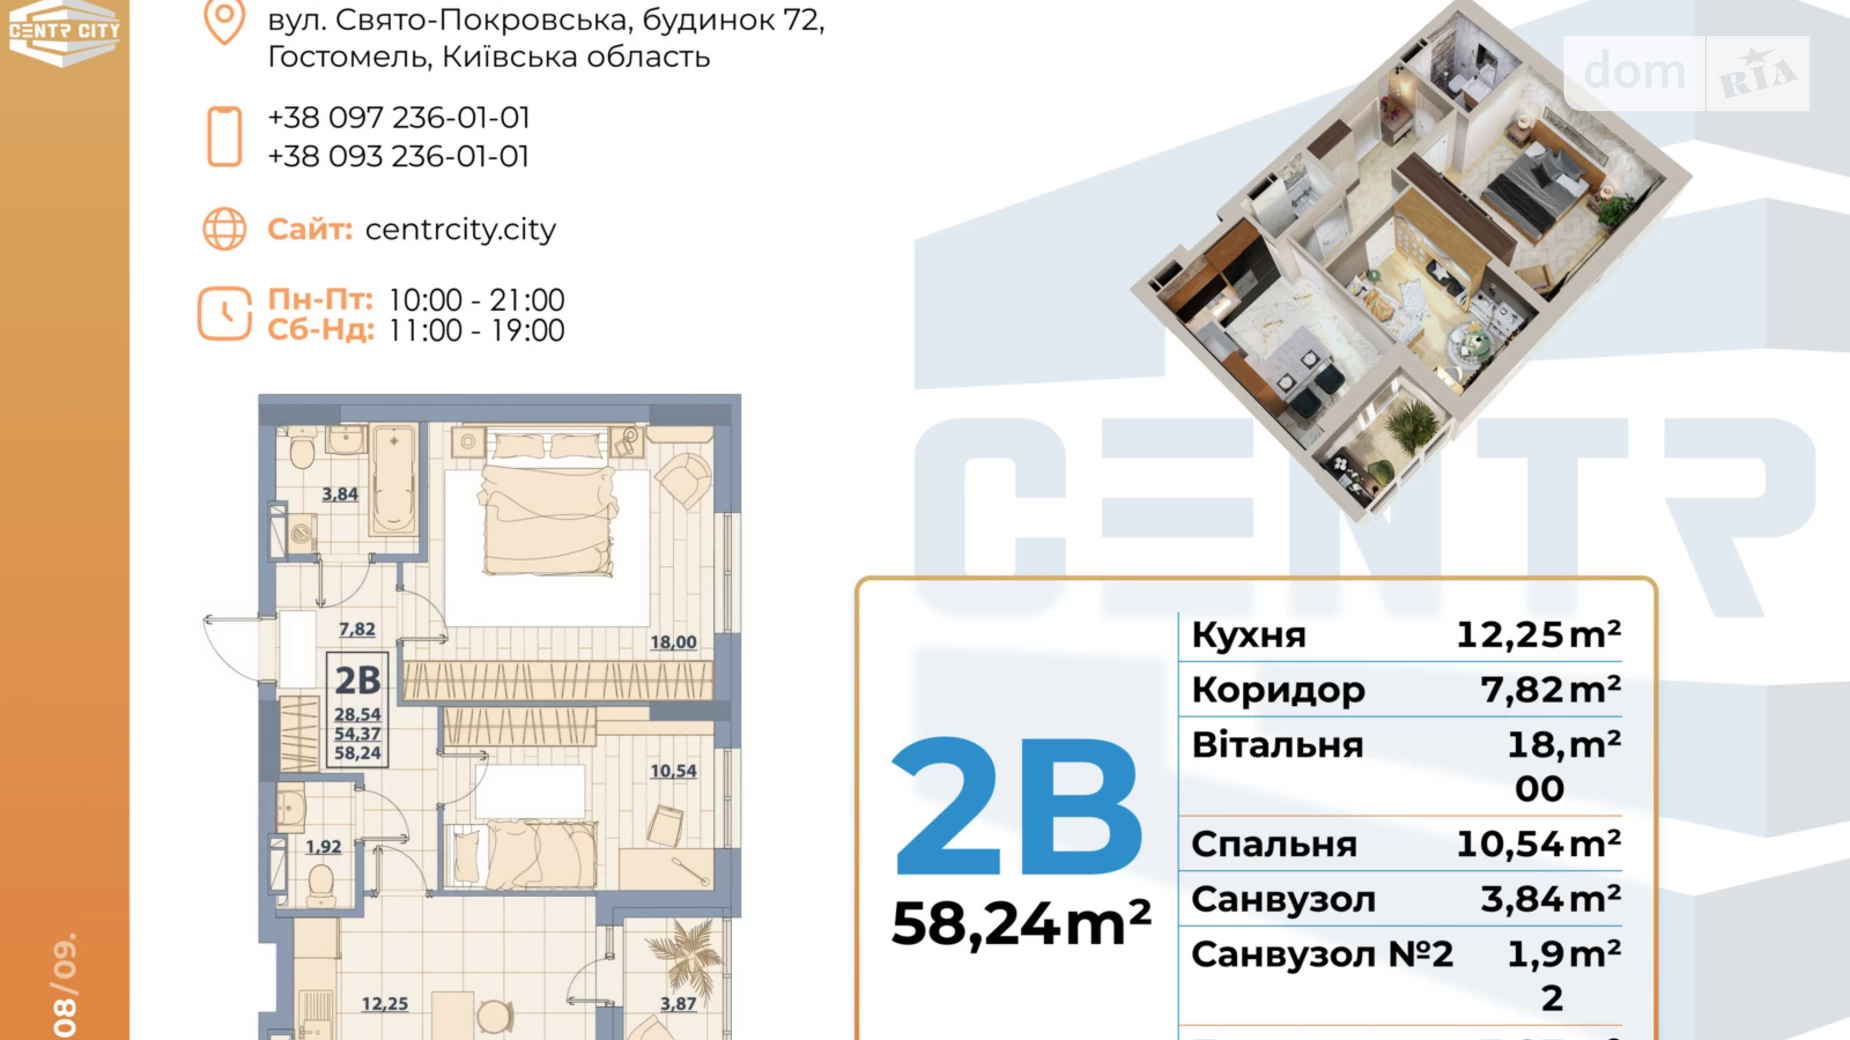 Продается 2-комнатная квартира 64 кв. м в Гостомеле, ул. Свято-Покровская, 72 - фото 2